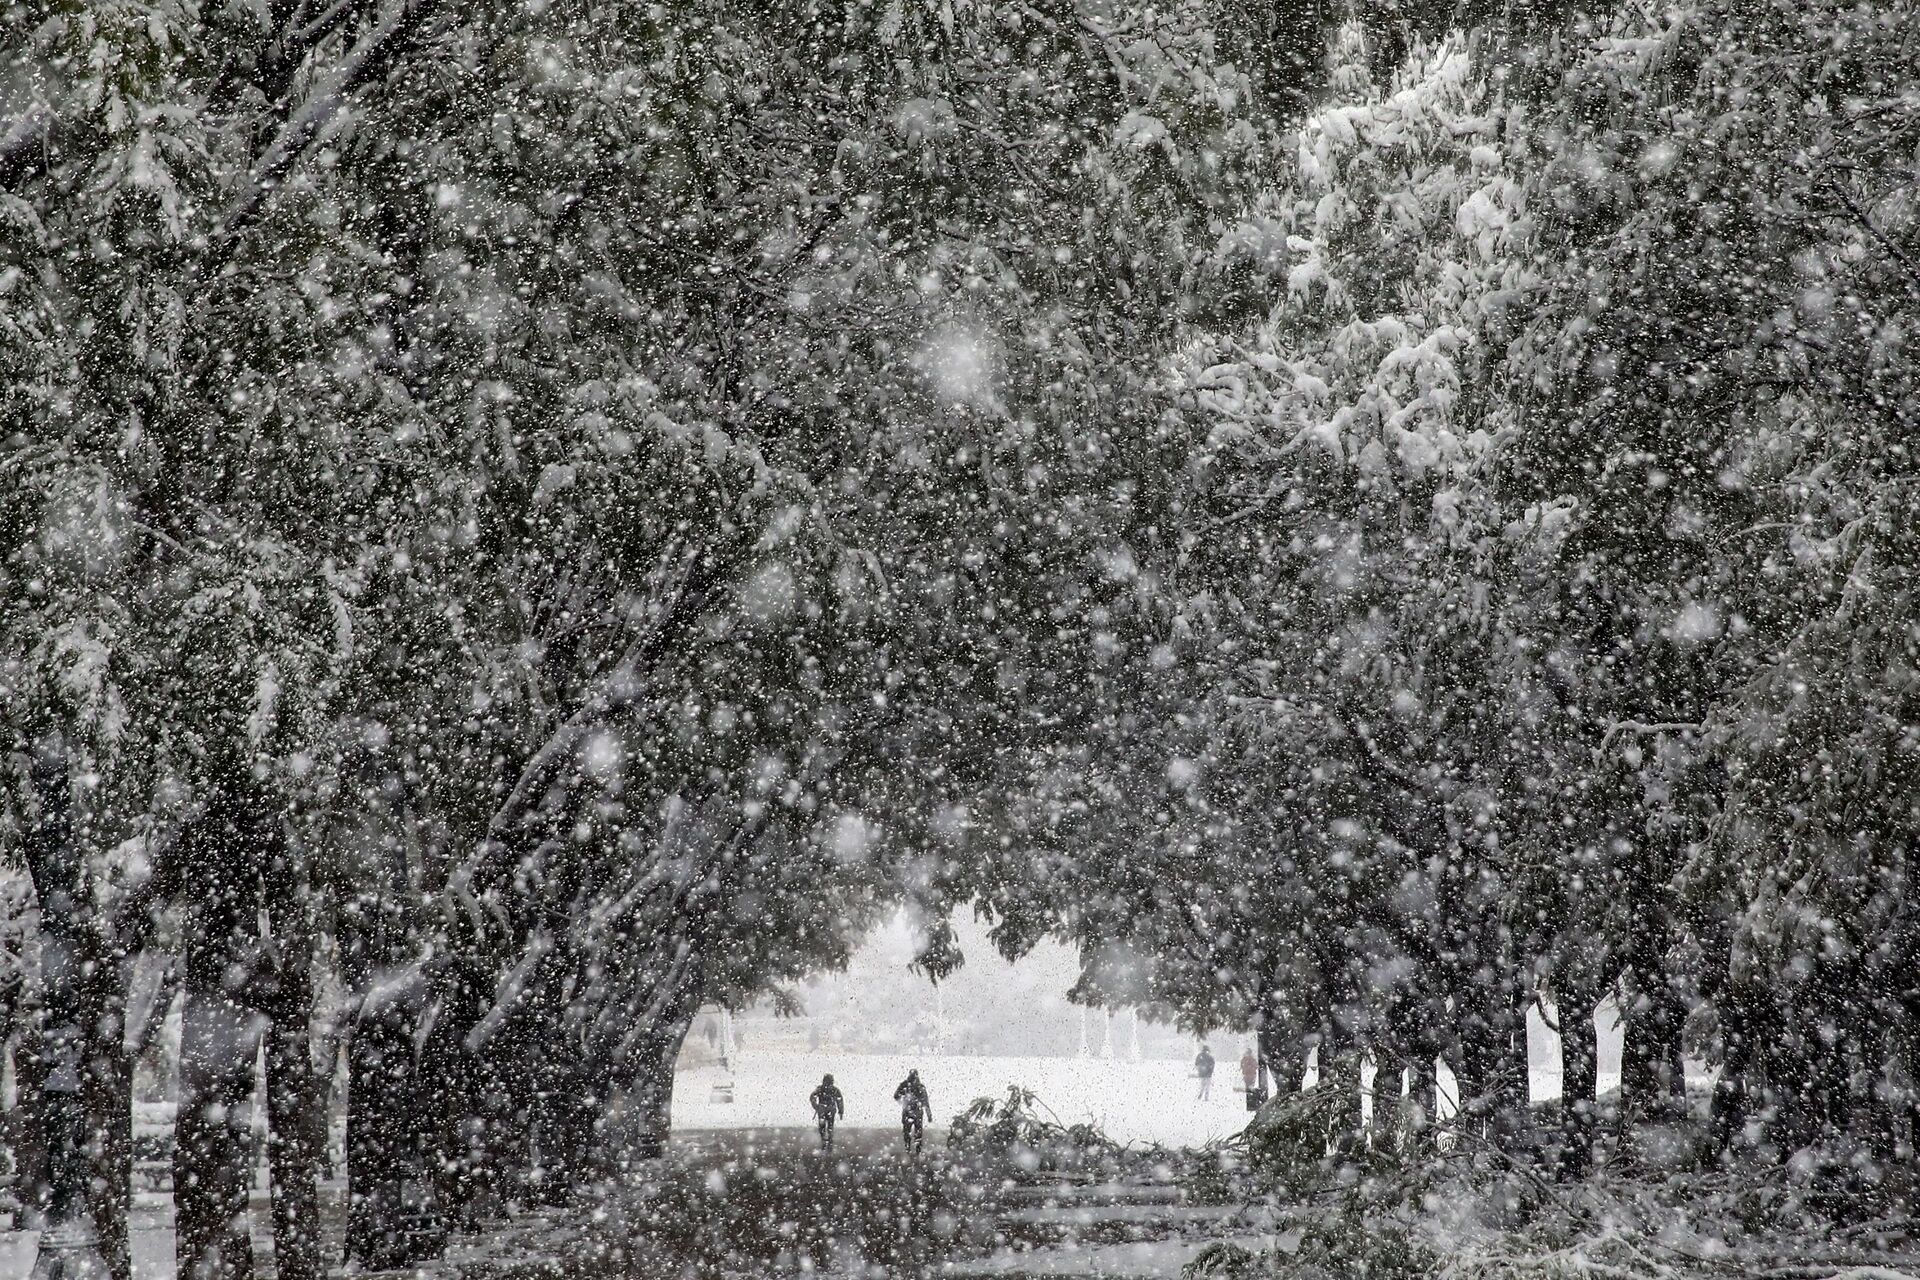 Грчка окована мразом и мећавом: Хаос широм земље, а атински Акропољ у снежној бајци,  /видео, фото/ - Sputnik Србија, 1920, 17.02.2021